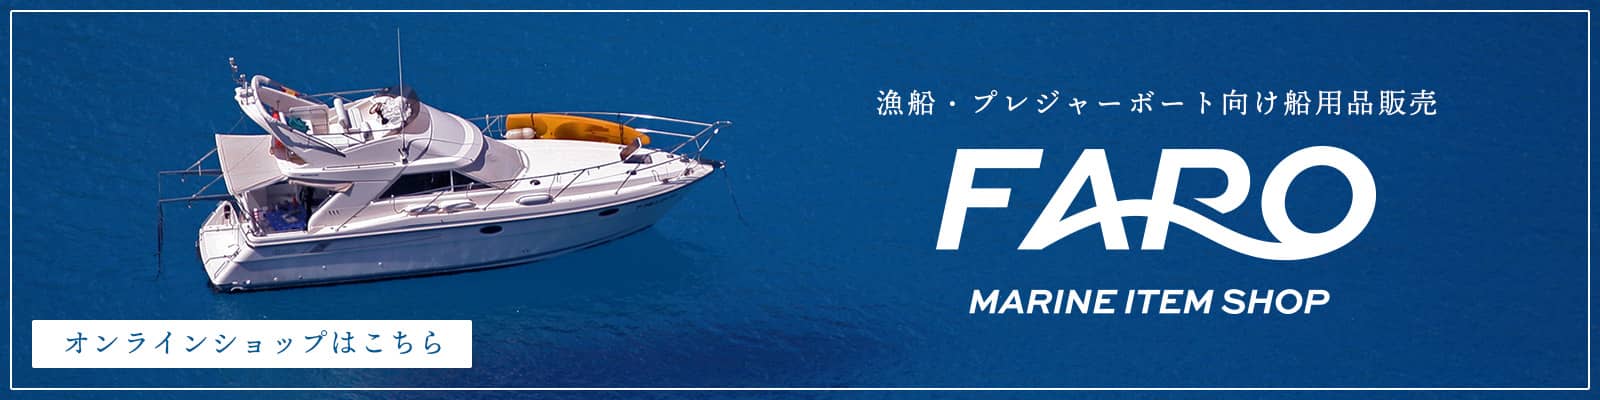 漁船・プレジャーボート向け船用品販売 FARO